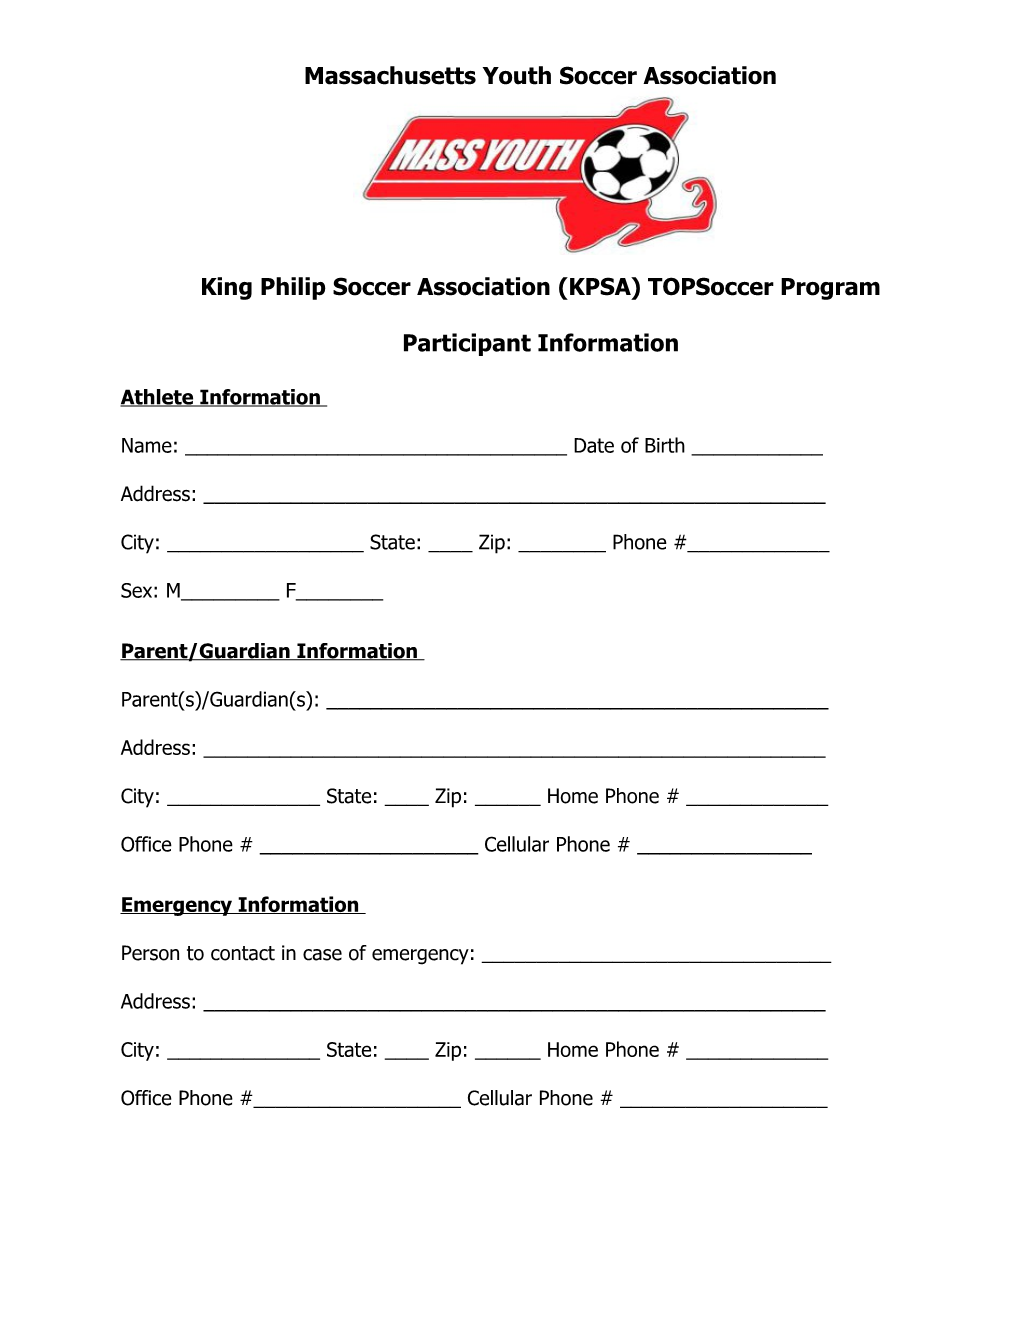 King Philip Soccer Association (KPSA) Topsoccer Program